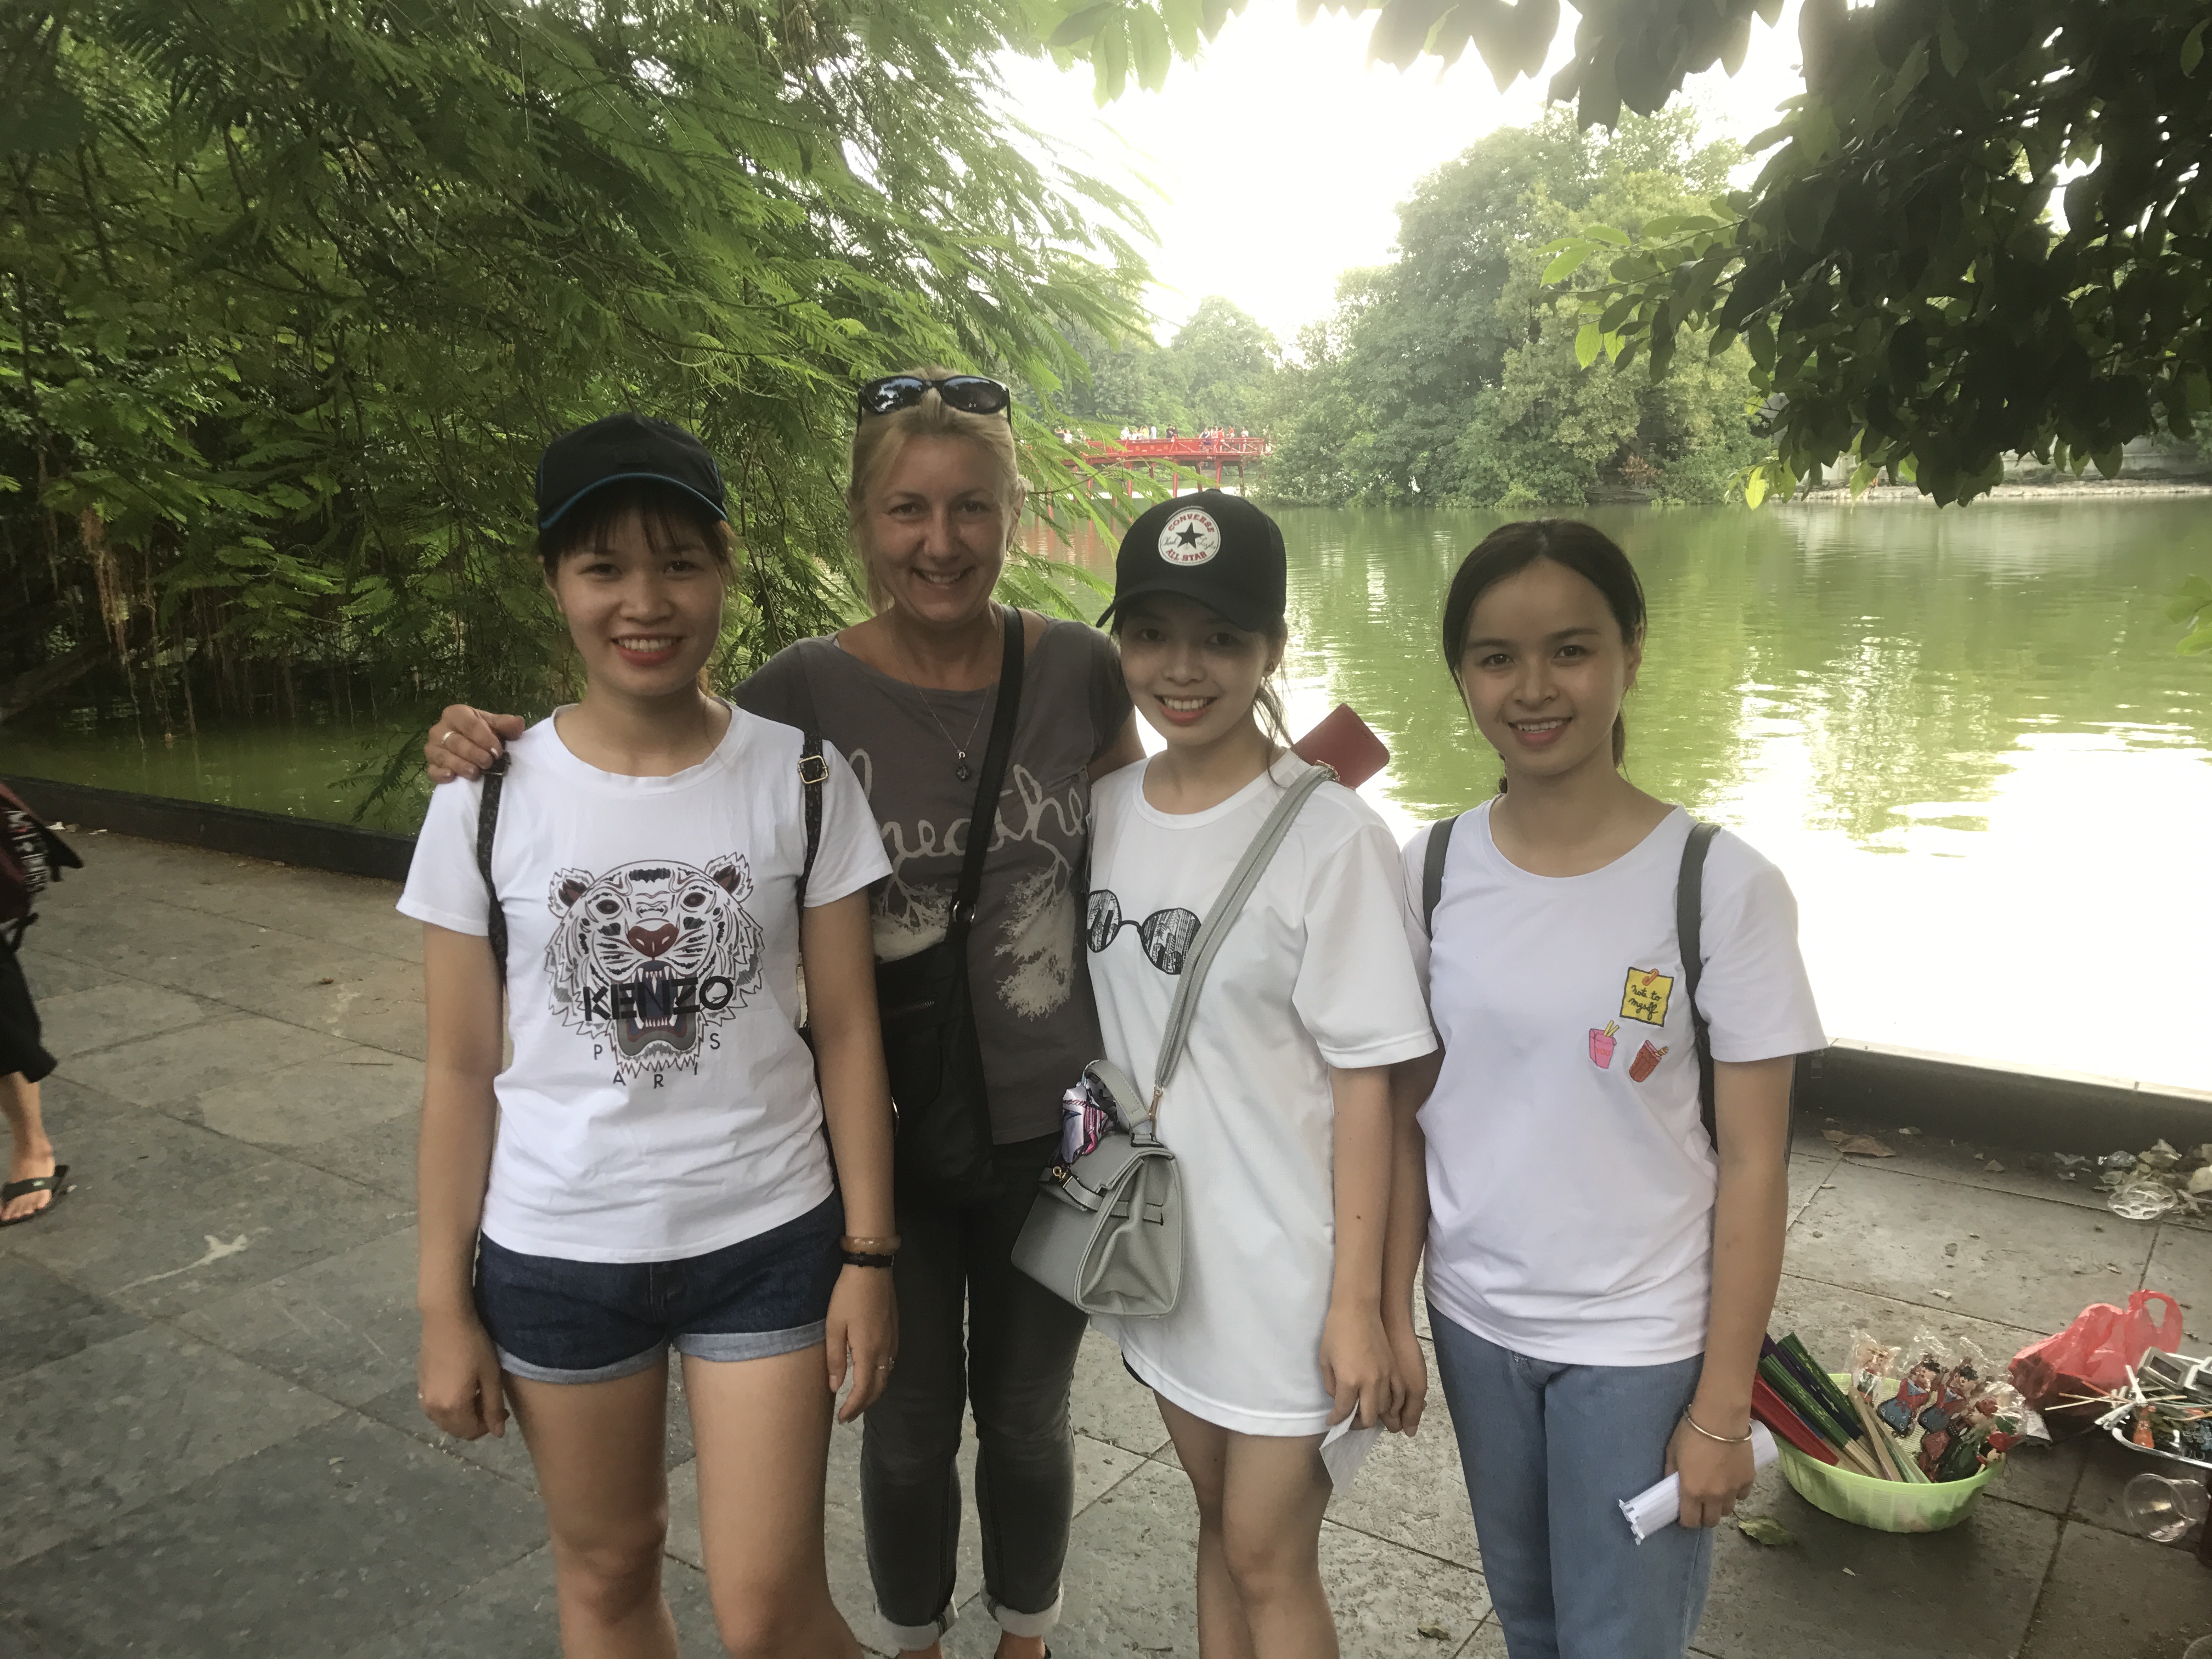 angolul tanuló vietnámi lányok